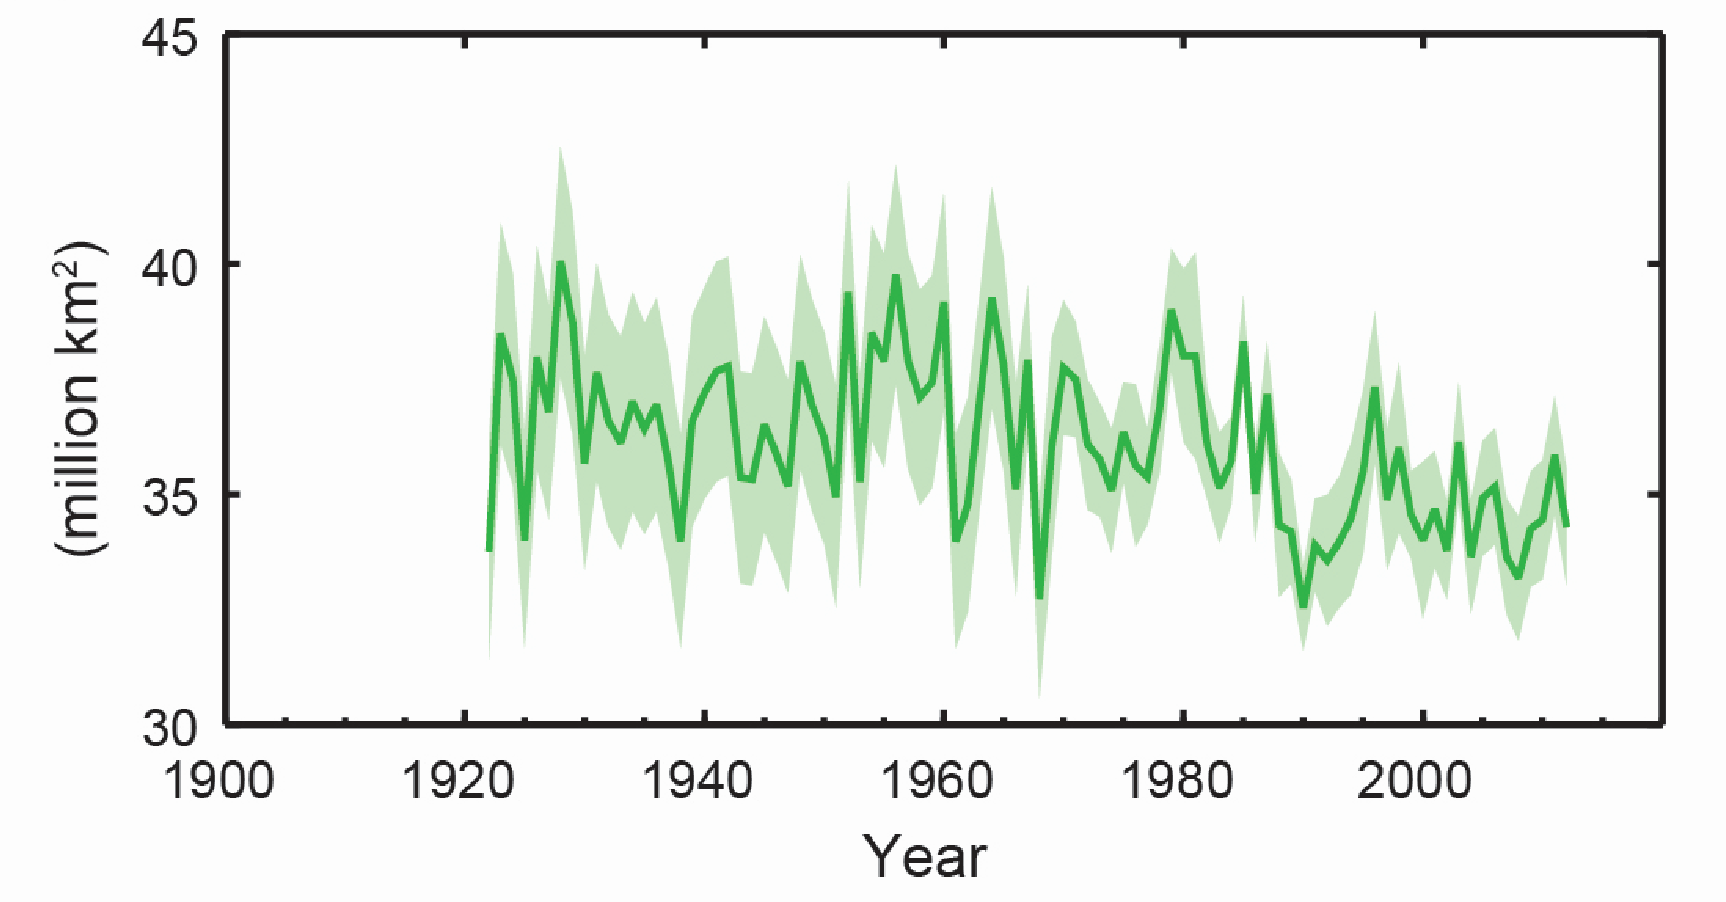 Kurvendiagramm: Die Kurve schwankt über die Jahre 1920 bis 2013 stark zwischen etwa 35 und 40 Millionen Quadratkilometer, die Tendenz ist sinkend